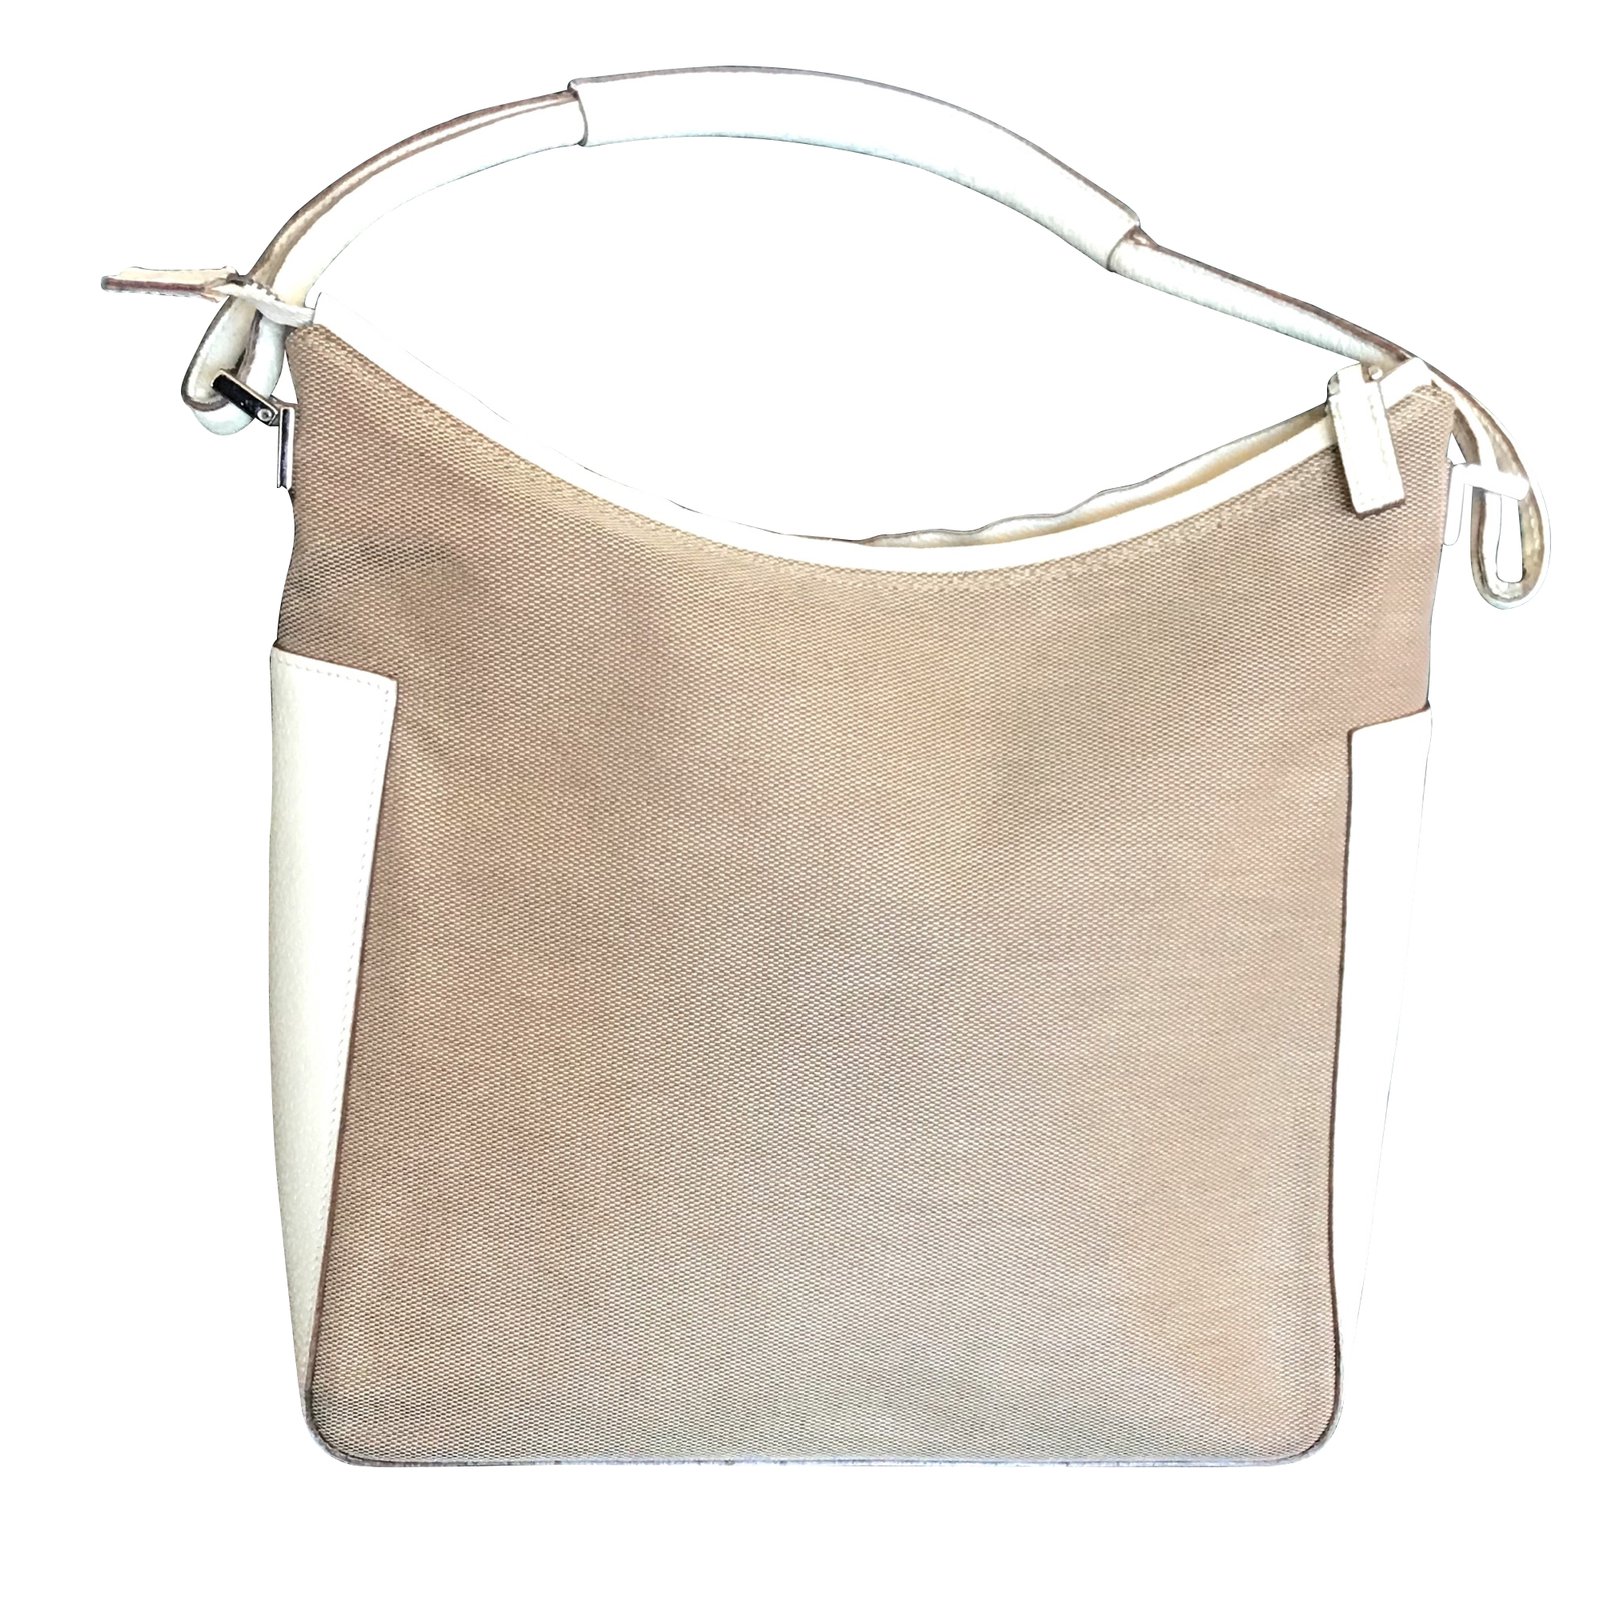 gucci handbags white color